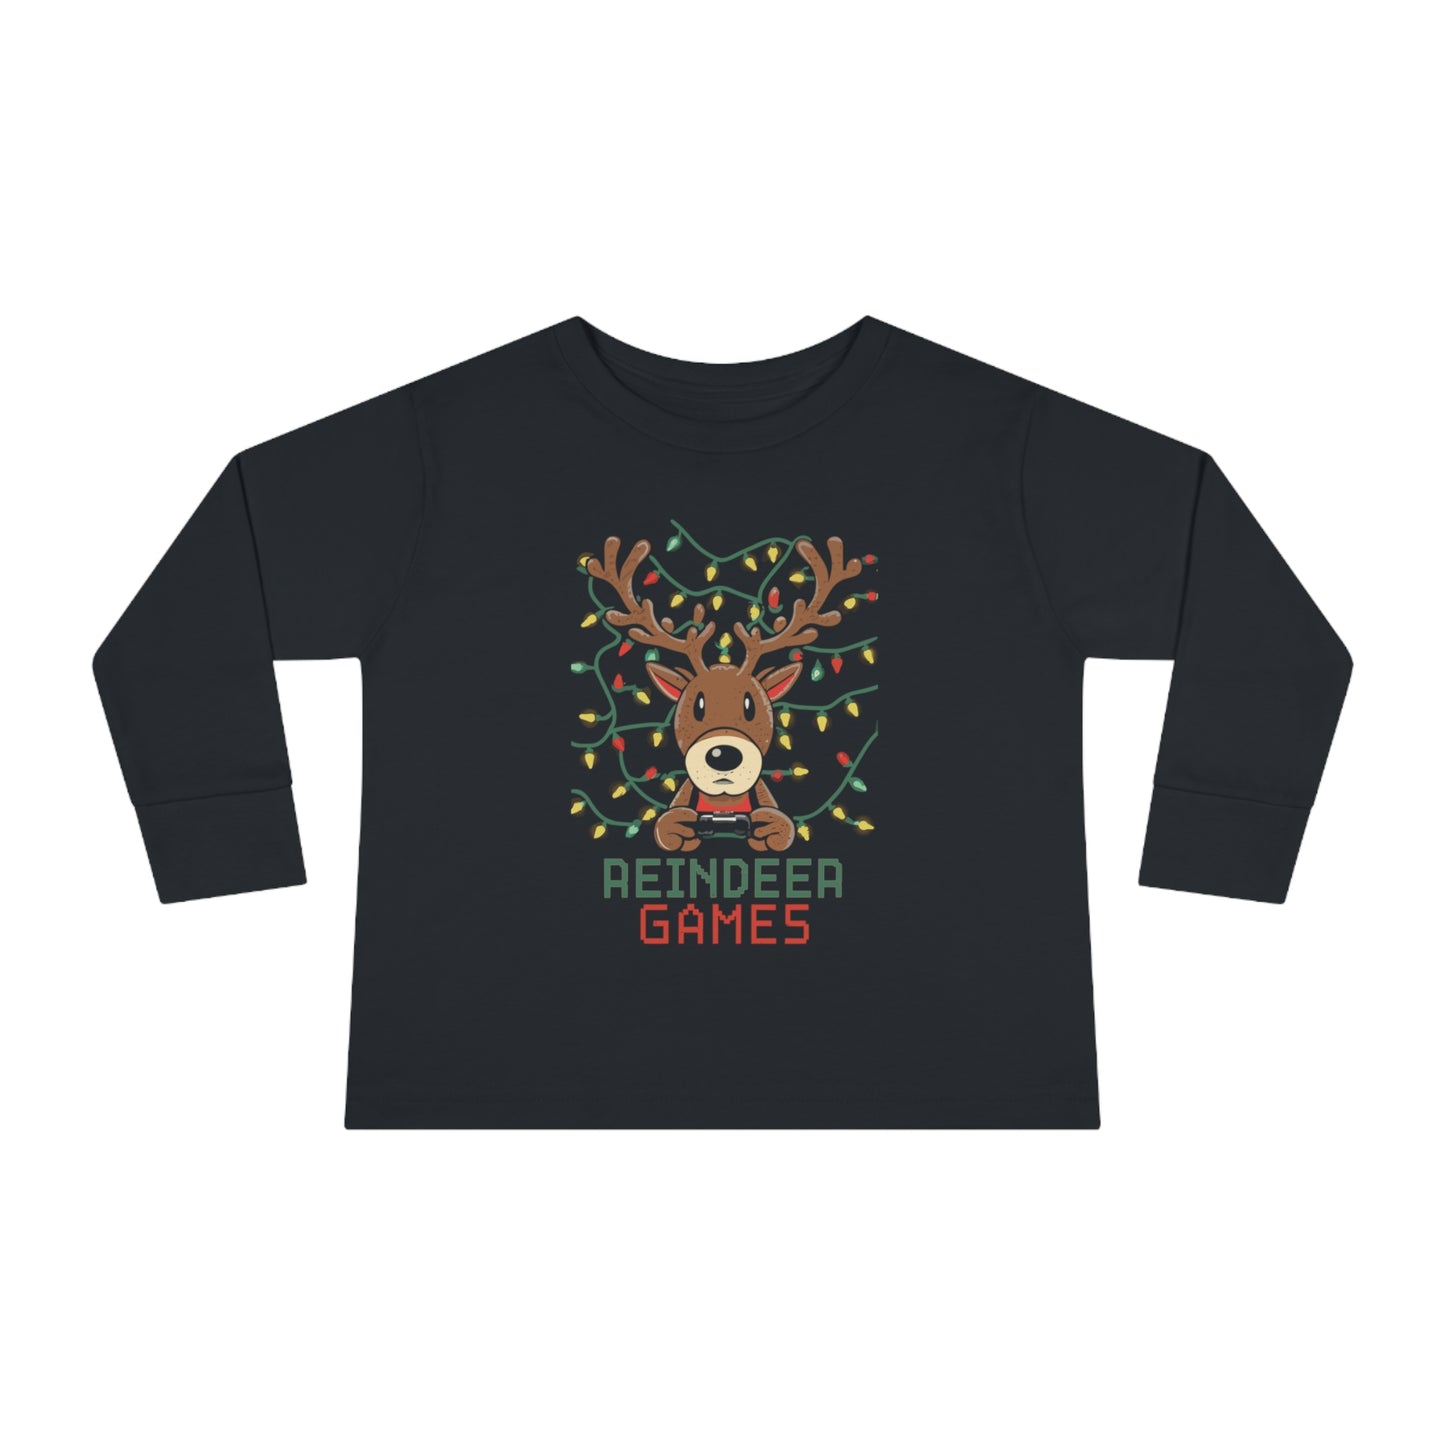 Reindeer Games, Toddler Long Sleeve Tee